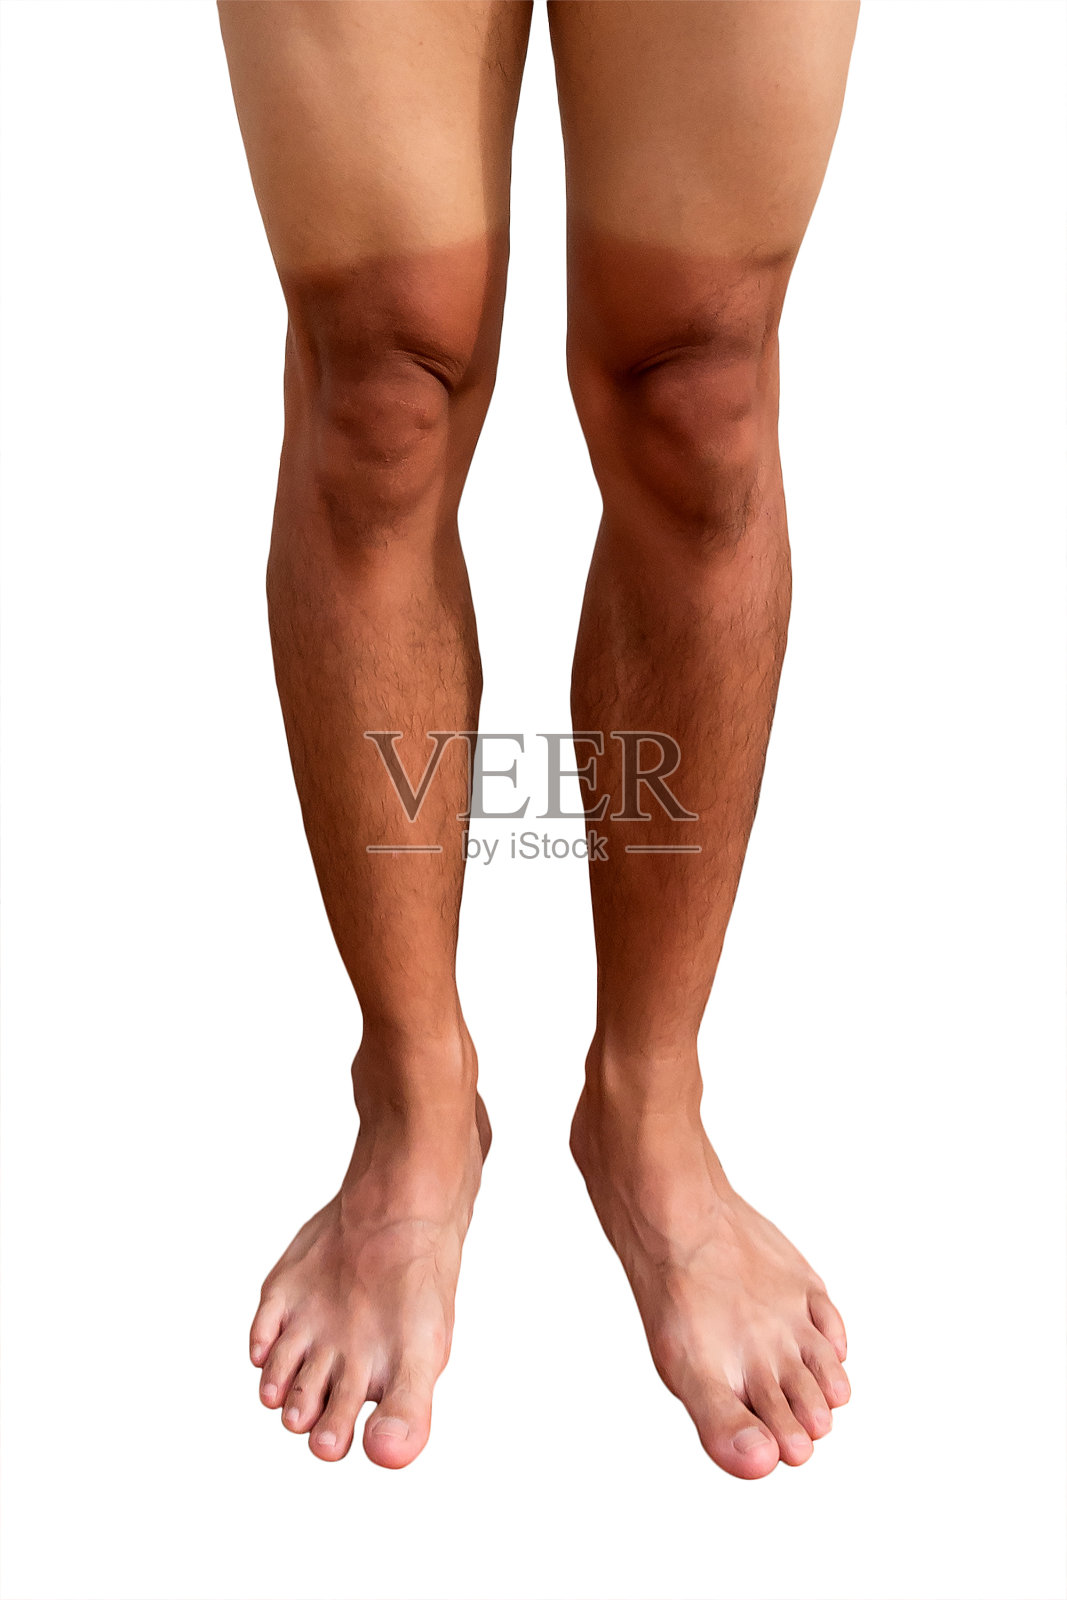 人的腿被晒成两种颜色照片摄影图片